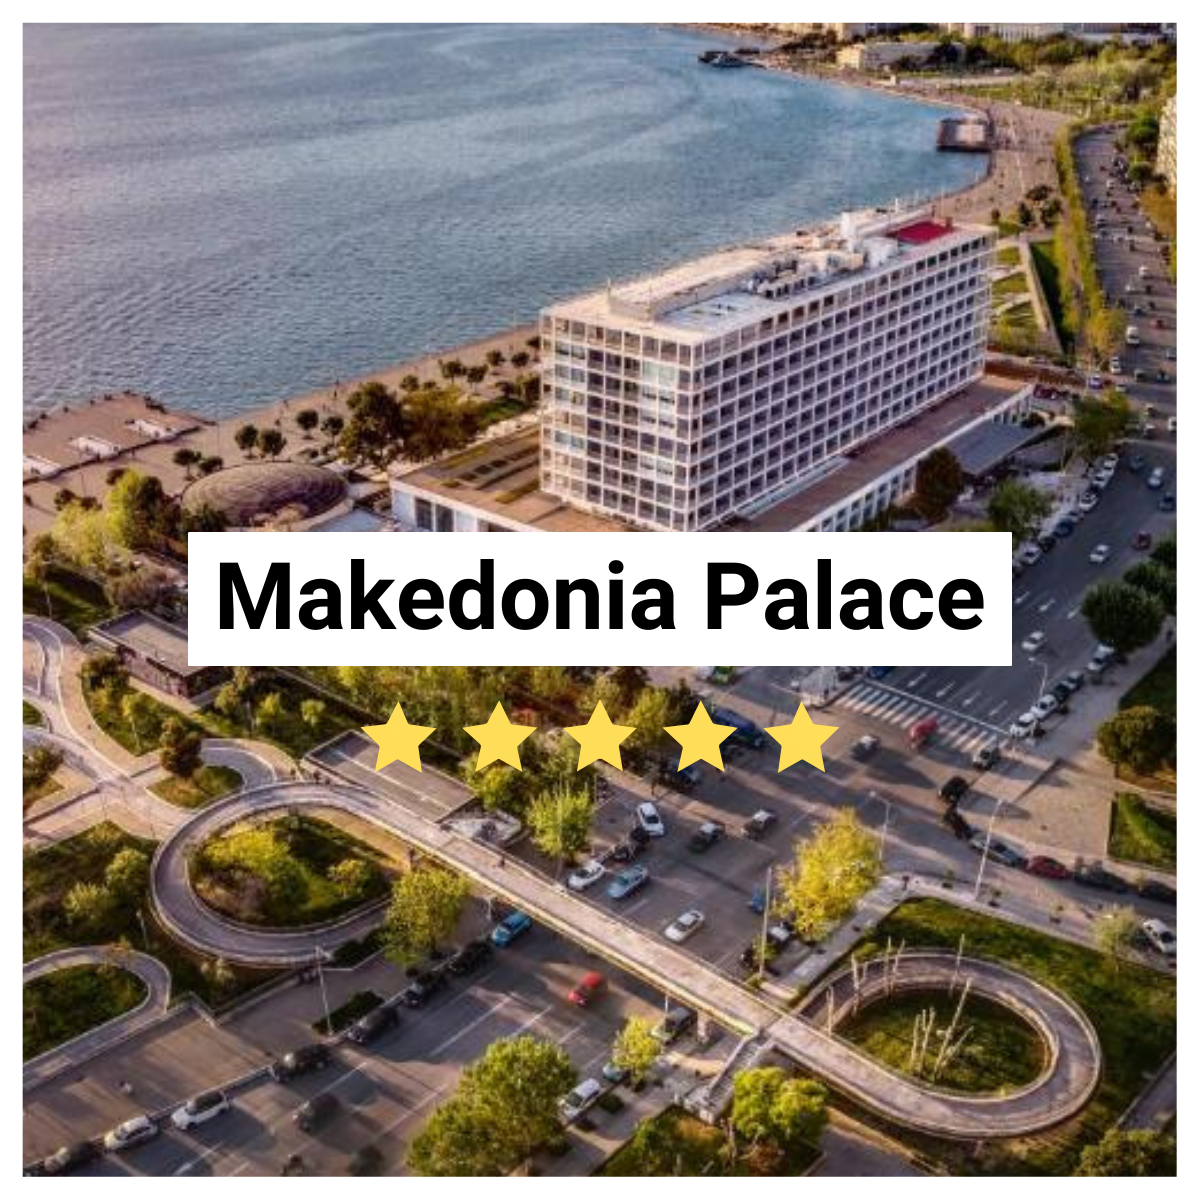 Makedonia Palace Hotel Image.